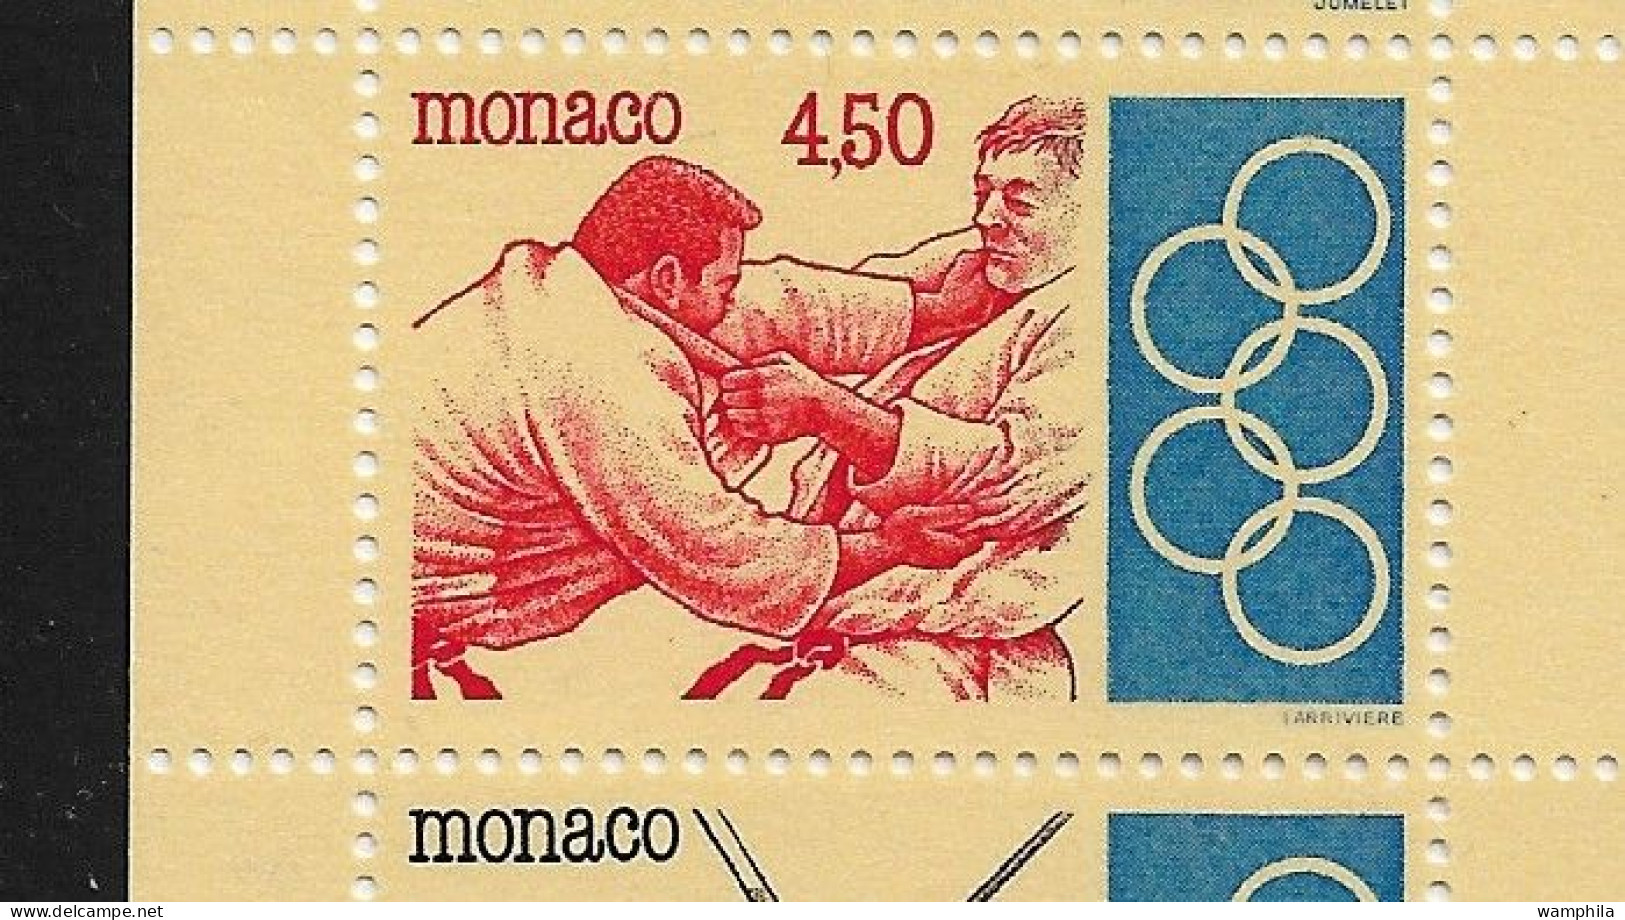 Monaco 1993. Carnet N°11, J.O .Anneaux, Judo, Escrime, Haies, Tir à L'arc, Haltérophilie. - Cuadernillos